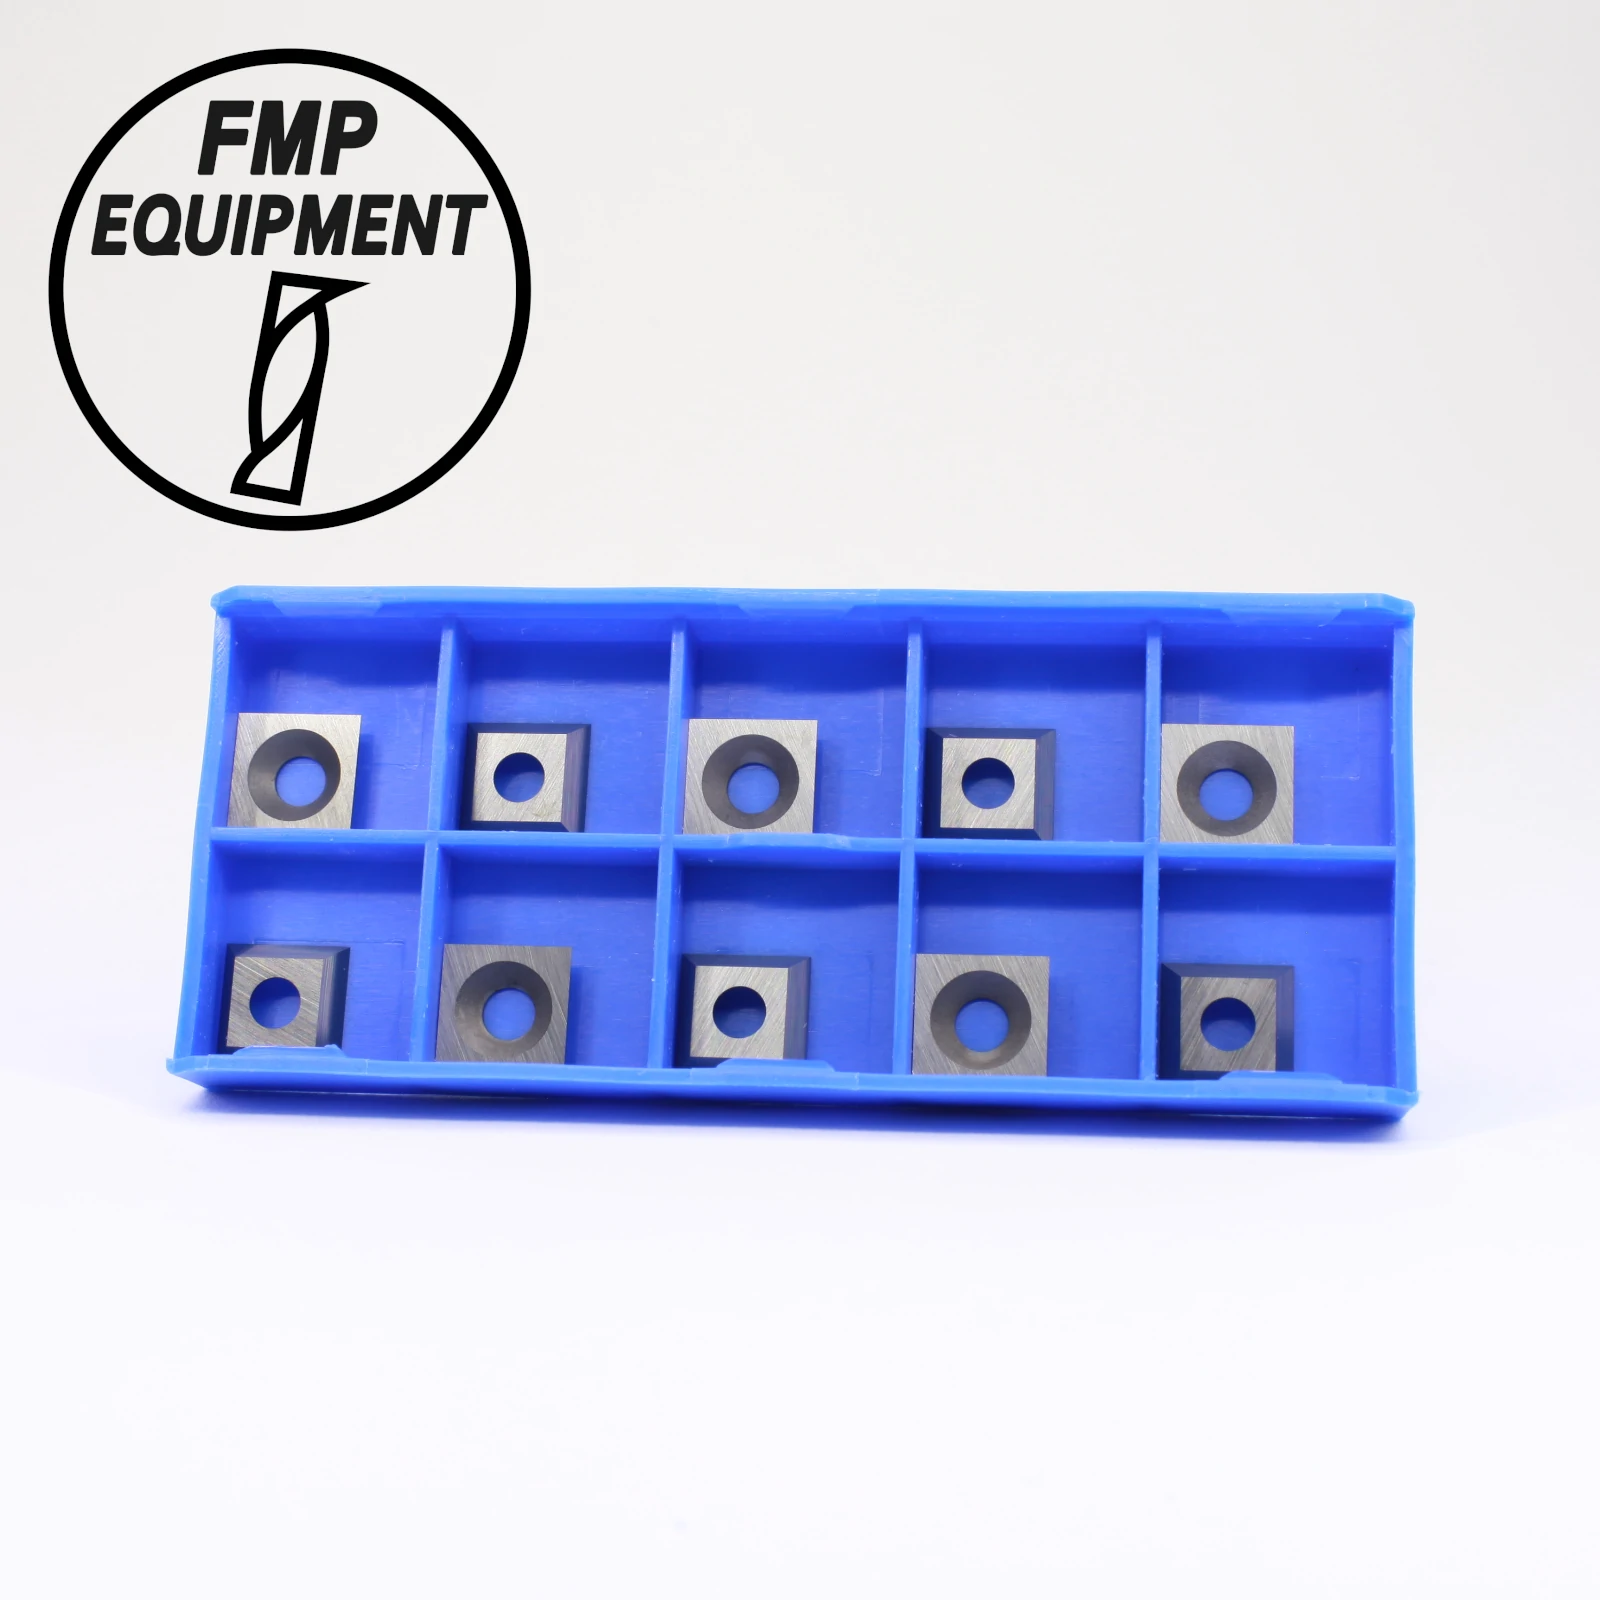 FMP Equipment - CNC Fräser / Zerspanungswerkzeug kaufen